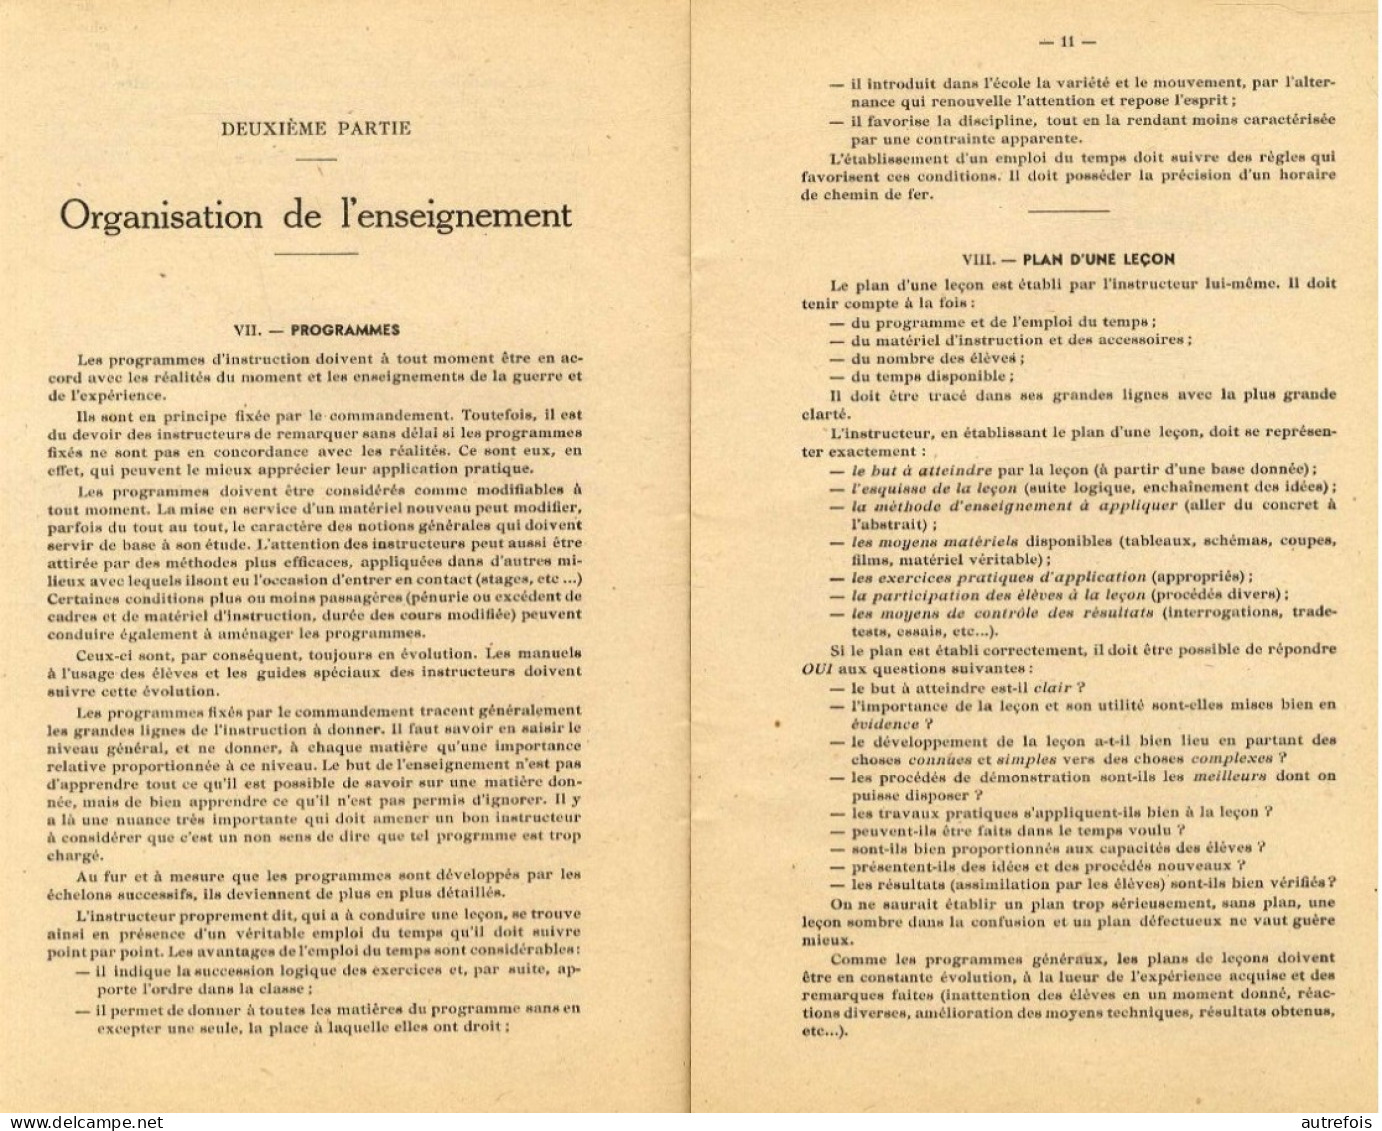 ECOLE DES MECANICIENS DE L AIR DE ROCHEFORT SUR MER  -  GUIDE PRATIQUE DE PEDAGOGIE  1952 - FASCICULE 31 PAGES - Aquitaine